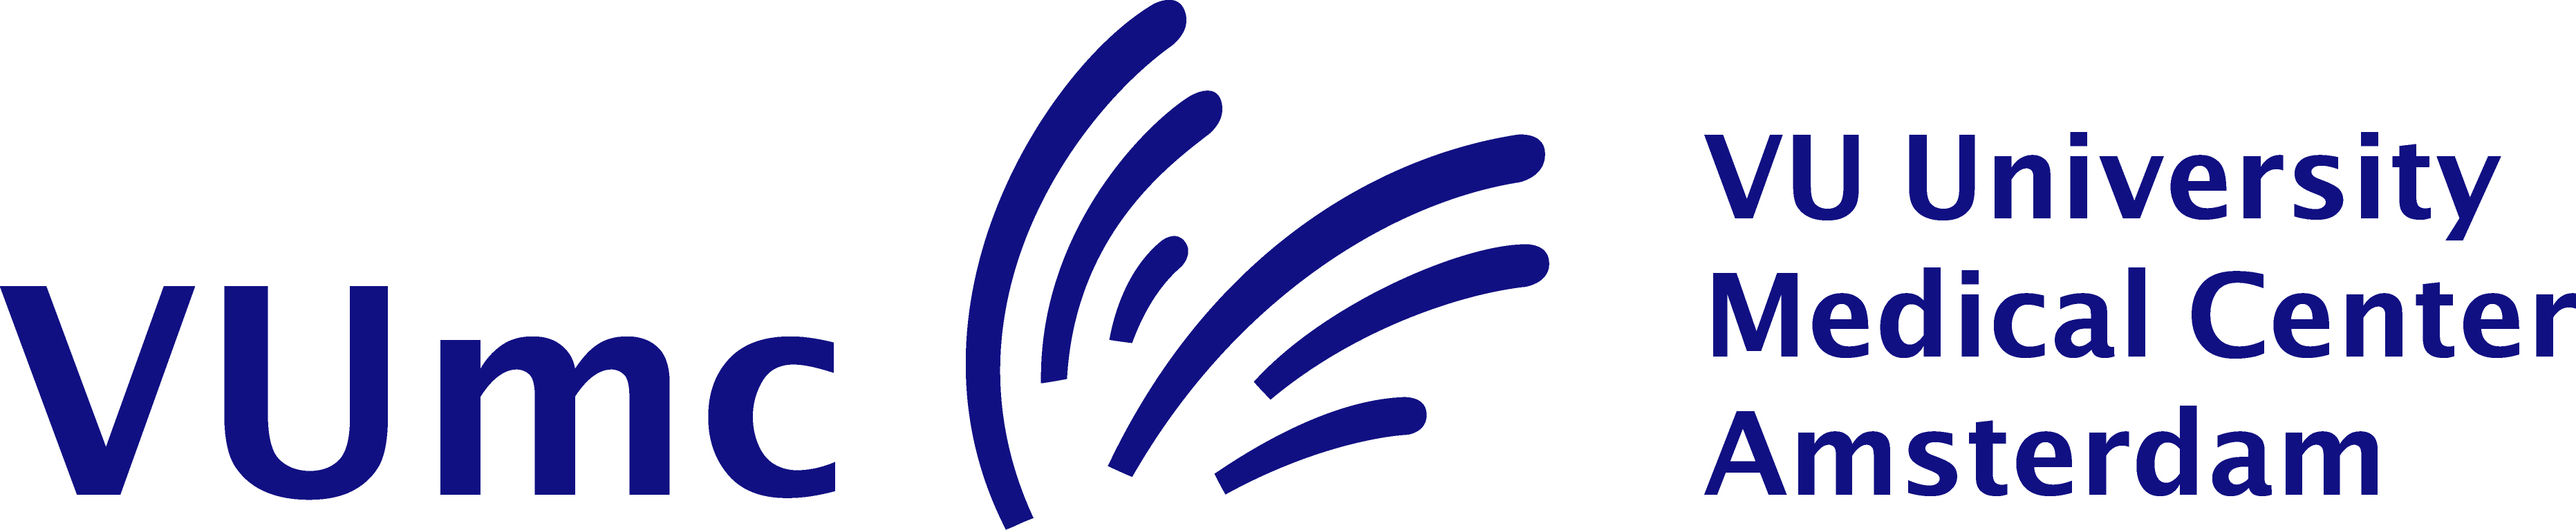 VUmc logo def